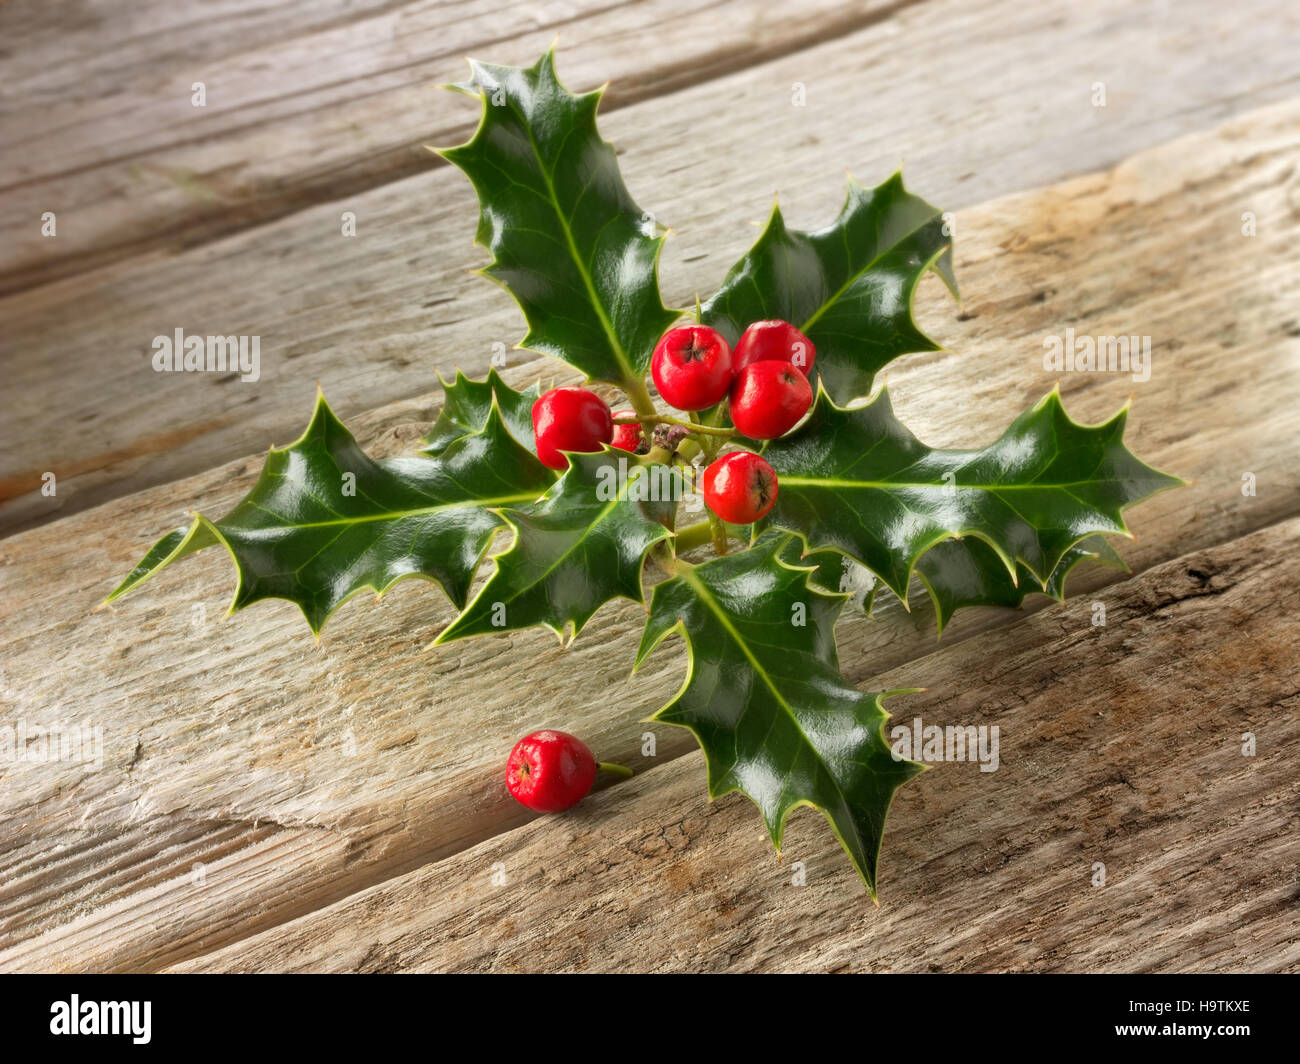 Acebos (Ilex), decoración de navidad con bayas rojas en madera Foto de stock